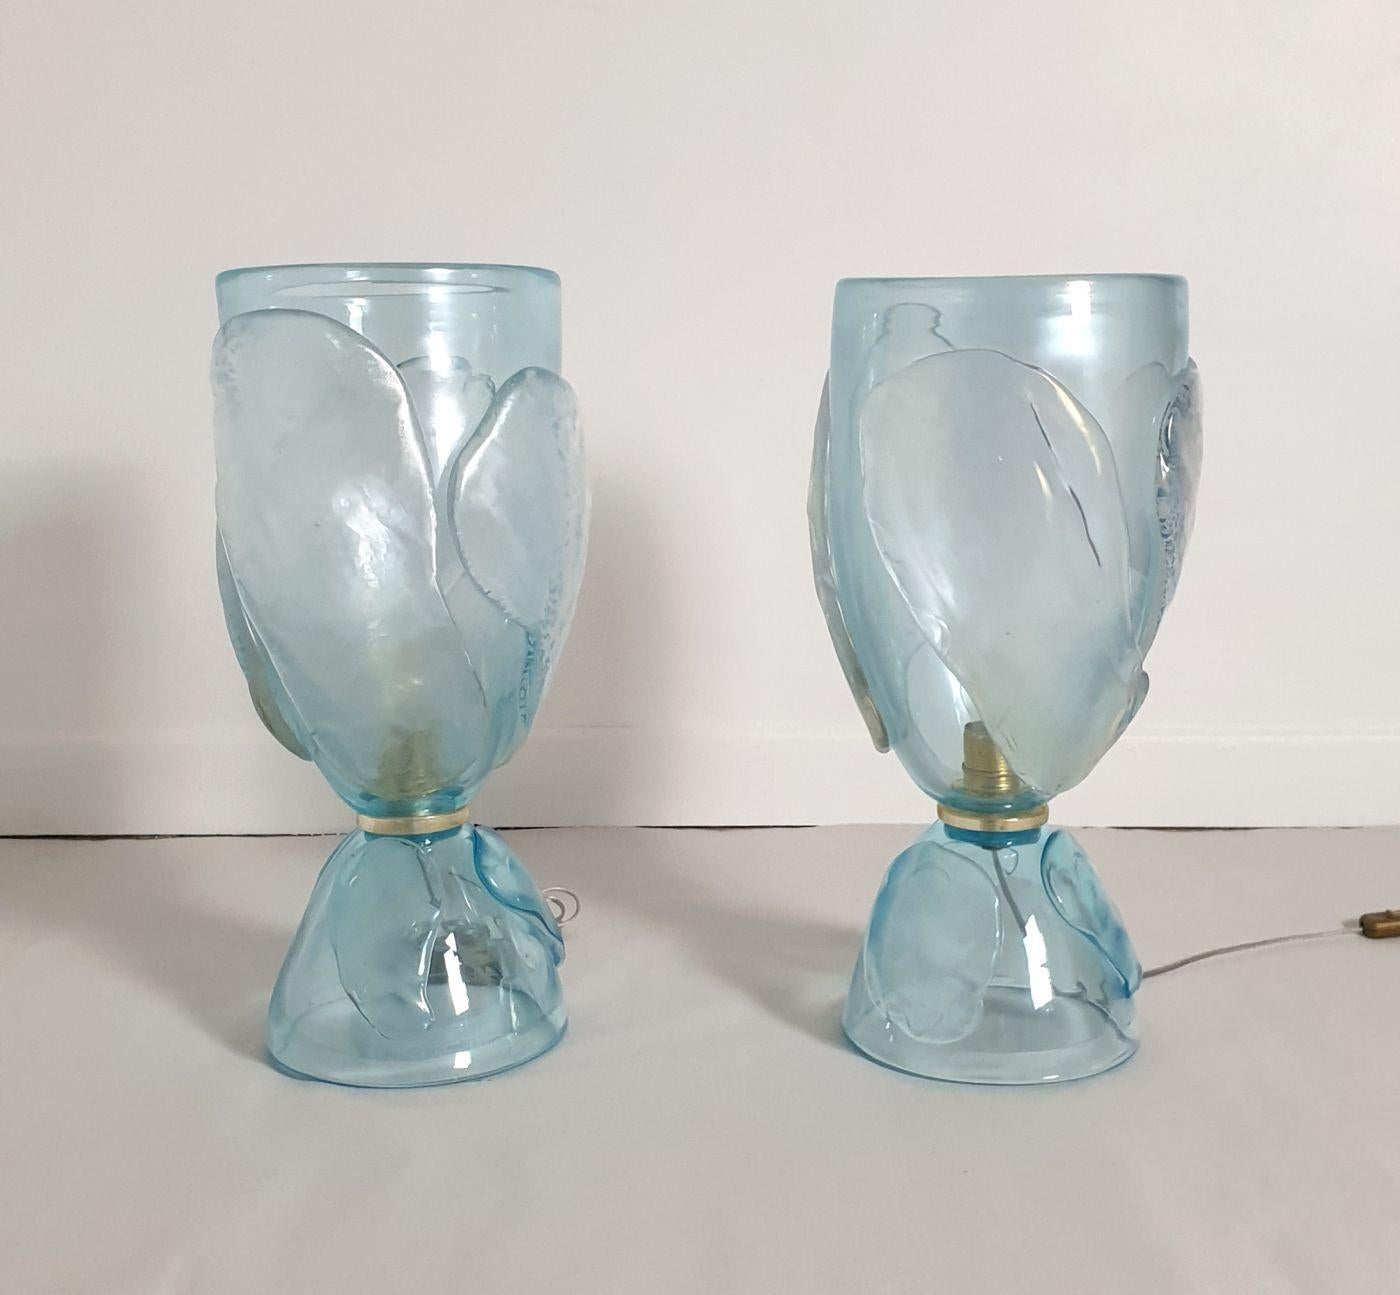 Paire de grandes lampes en verre de Murano bleu ciel, Italie 1970, attribuées à Seguso.
La paire de lampes vintage est fabriquée à la main dans un verre de Murano épais et lourd.
Le verre est d'un bleu ciel transparent et devient translucide avec la